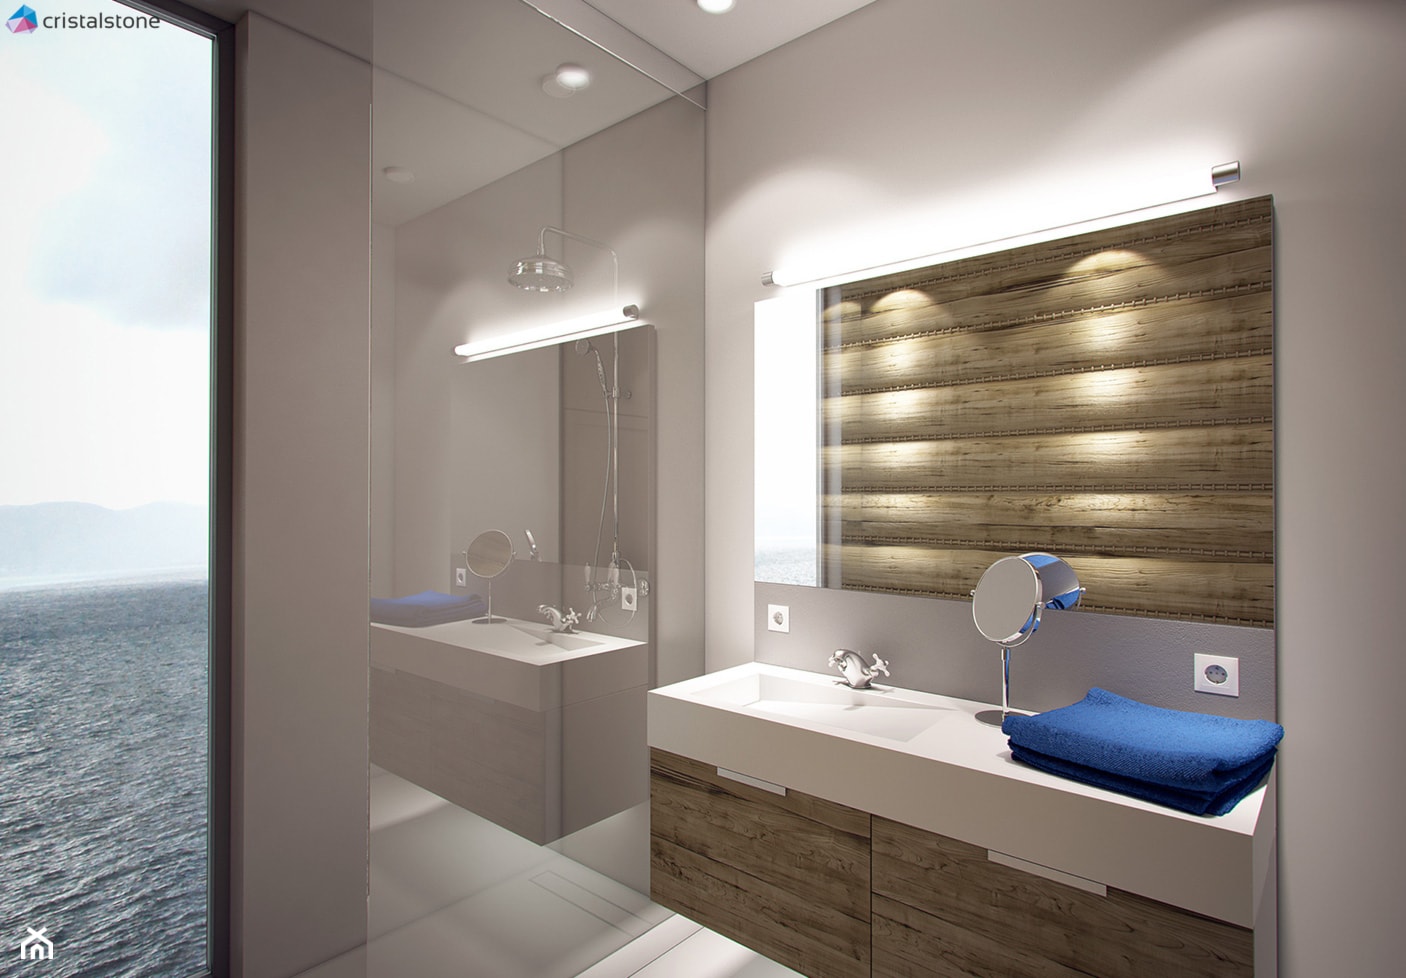 Minimalistyczna łazienka w Lozannie - Łazienka, styl nowoczesny - zdjęcie od Cristalstone - Homebook